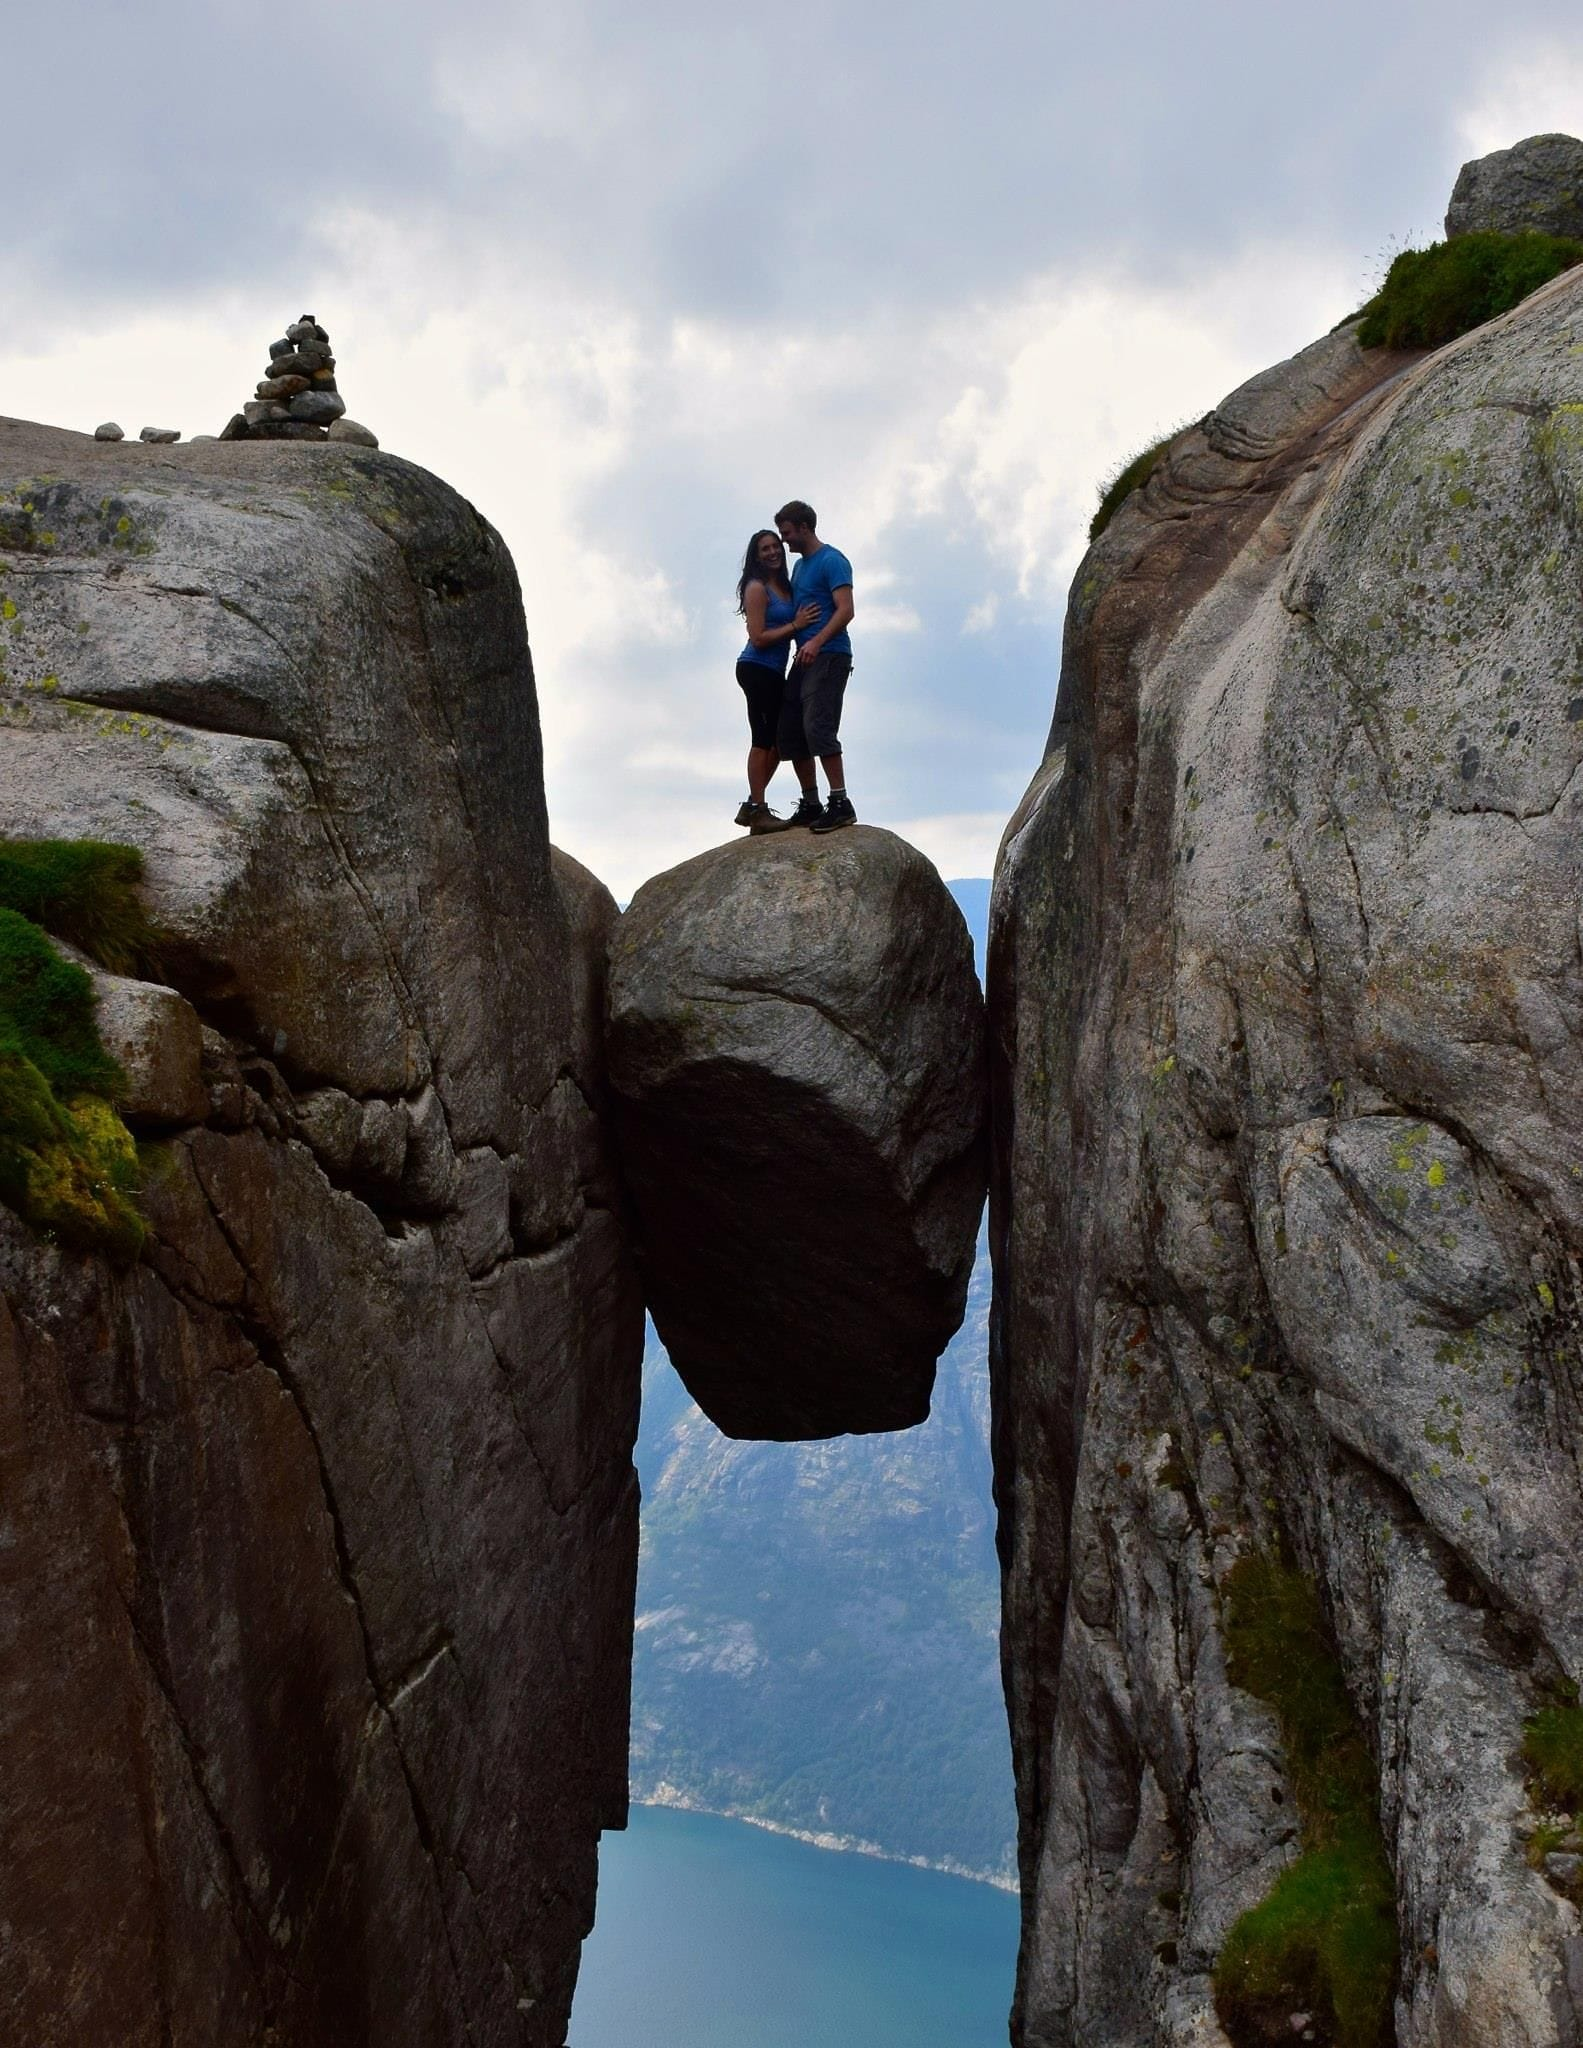 Staci Brinkman and Øivind Loe standing on Kjeragbolten rock in Norway